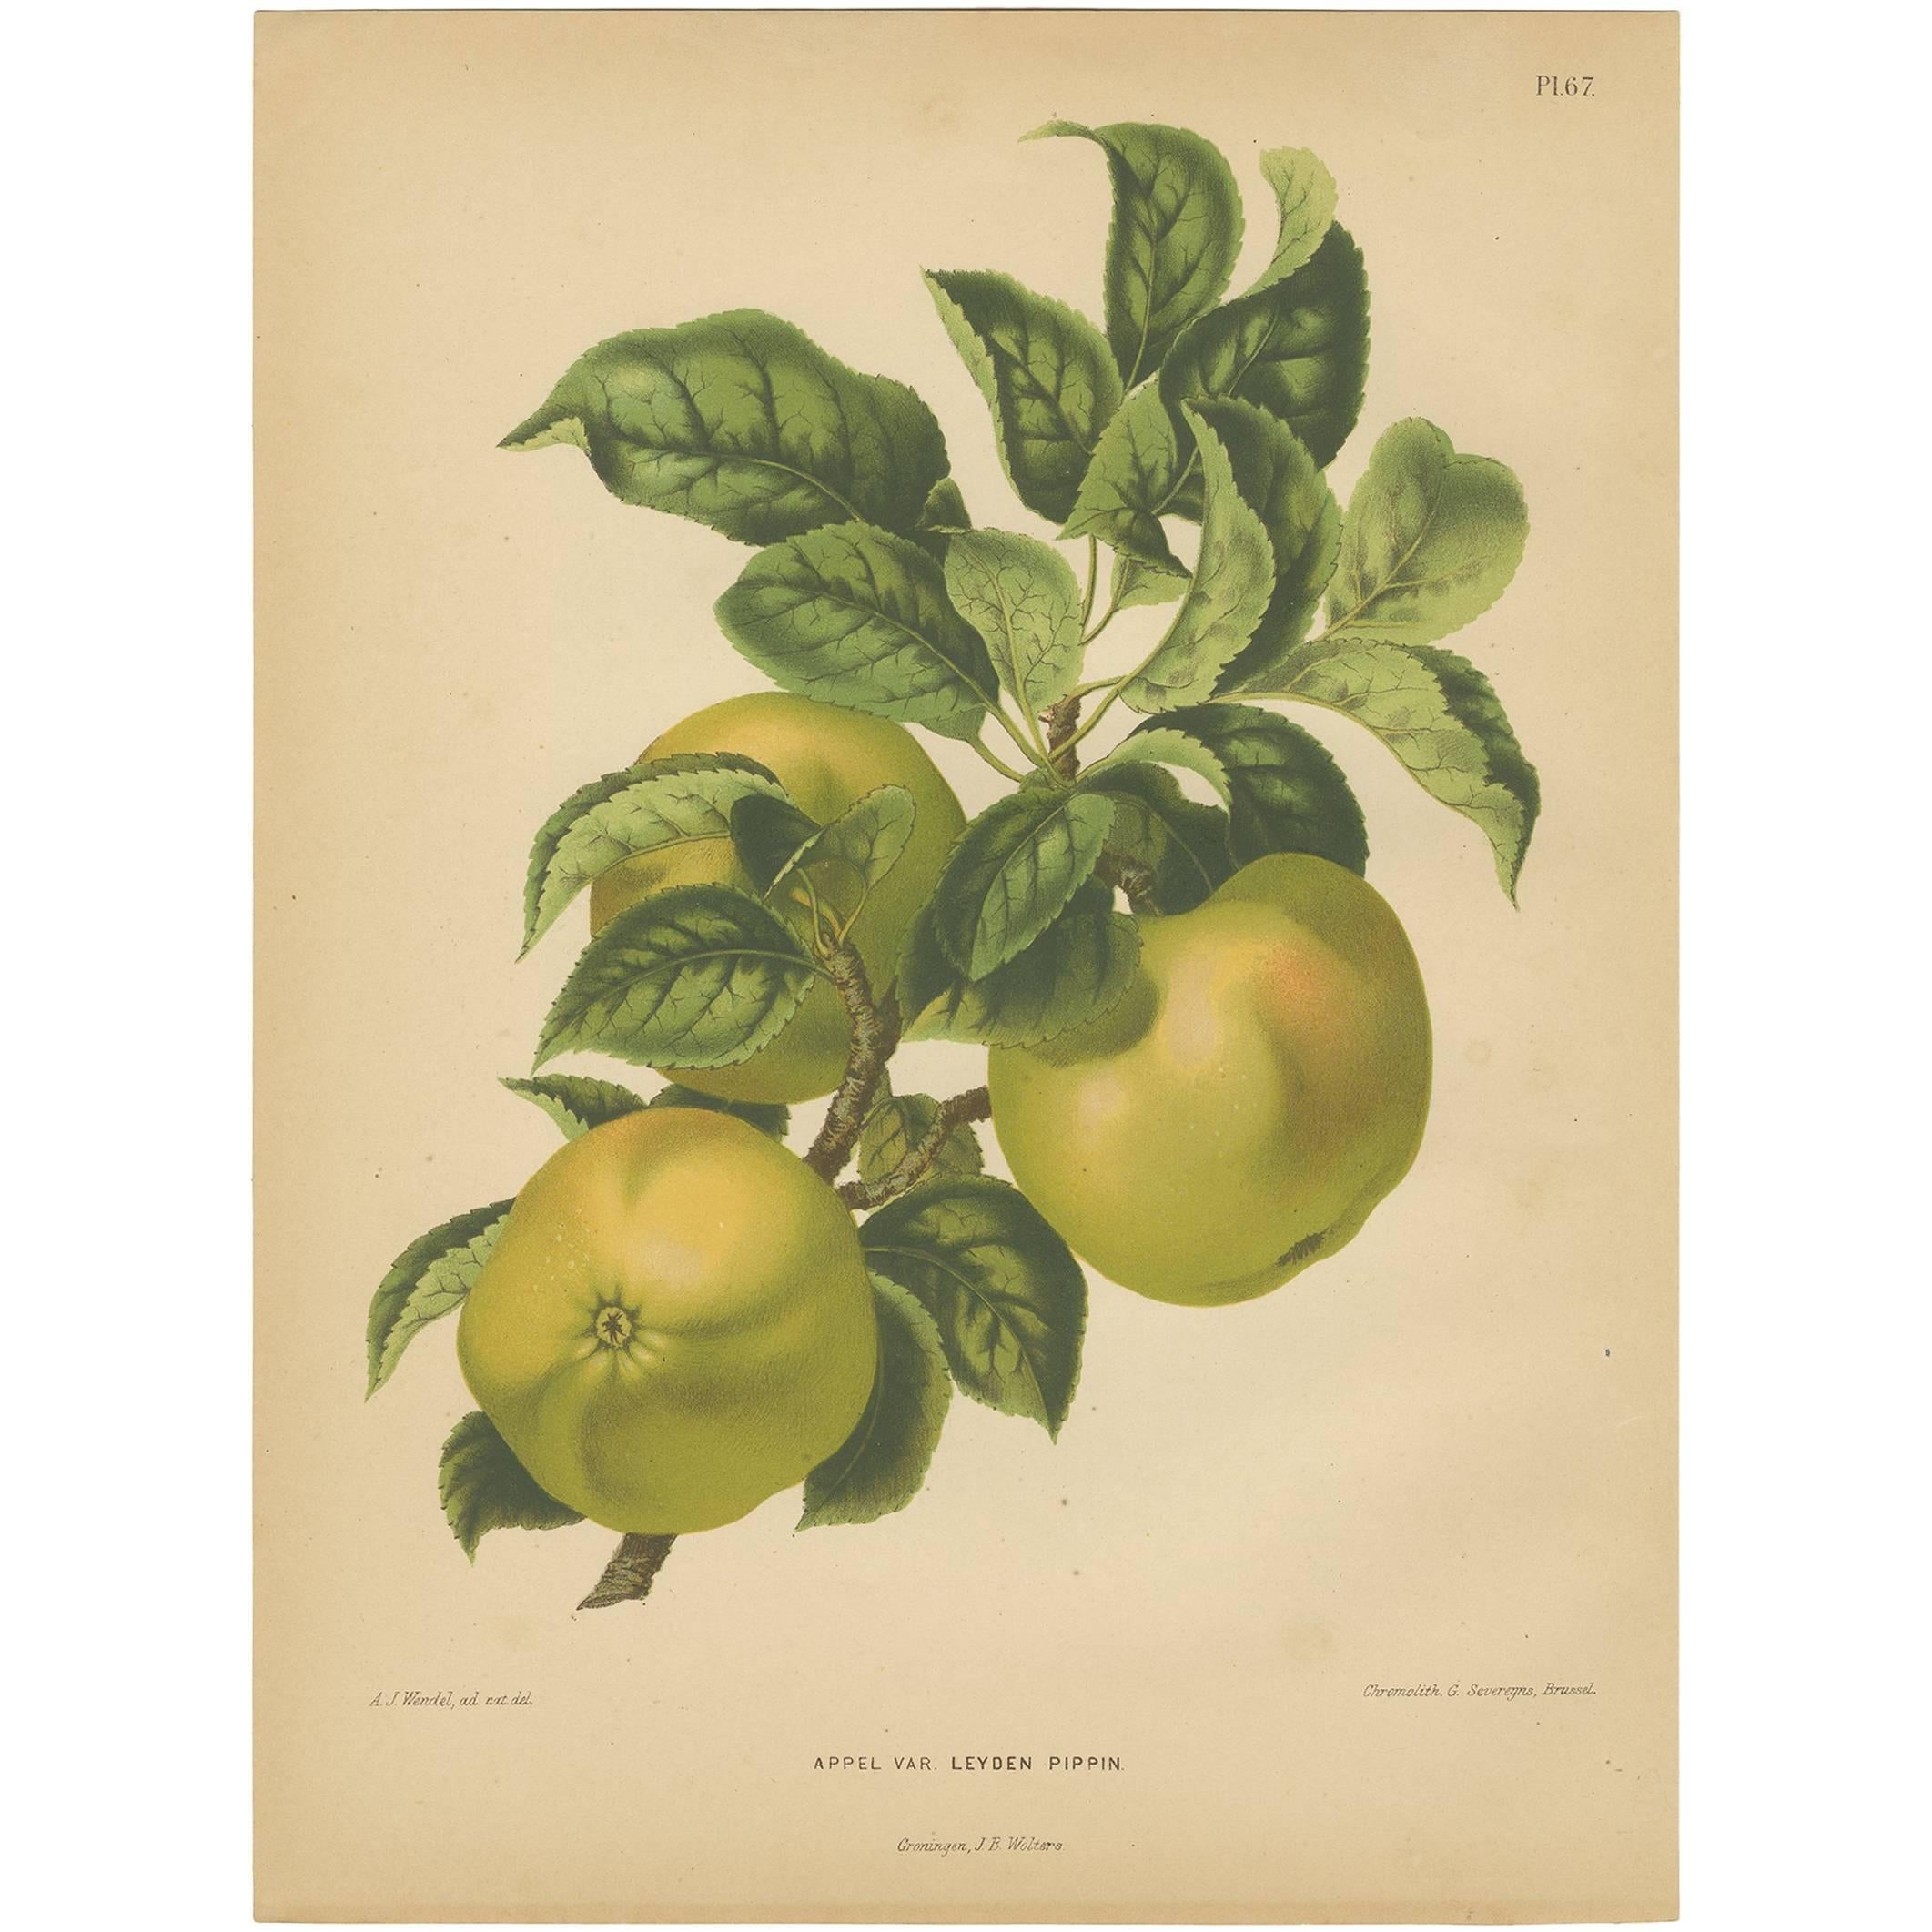 Antiker Druck des Leyden Pippin Apfels von G. Severeyns, 1876